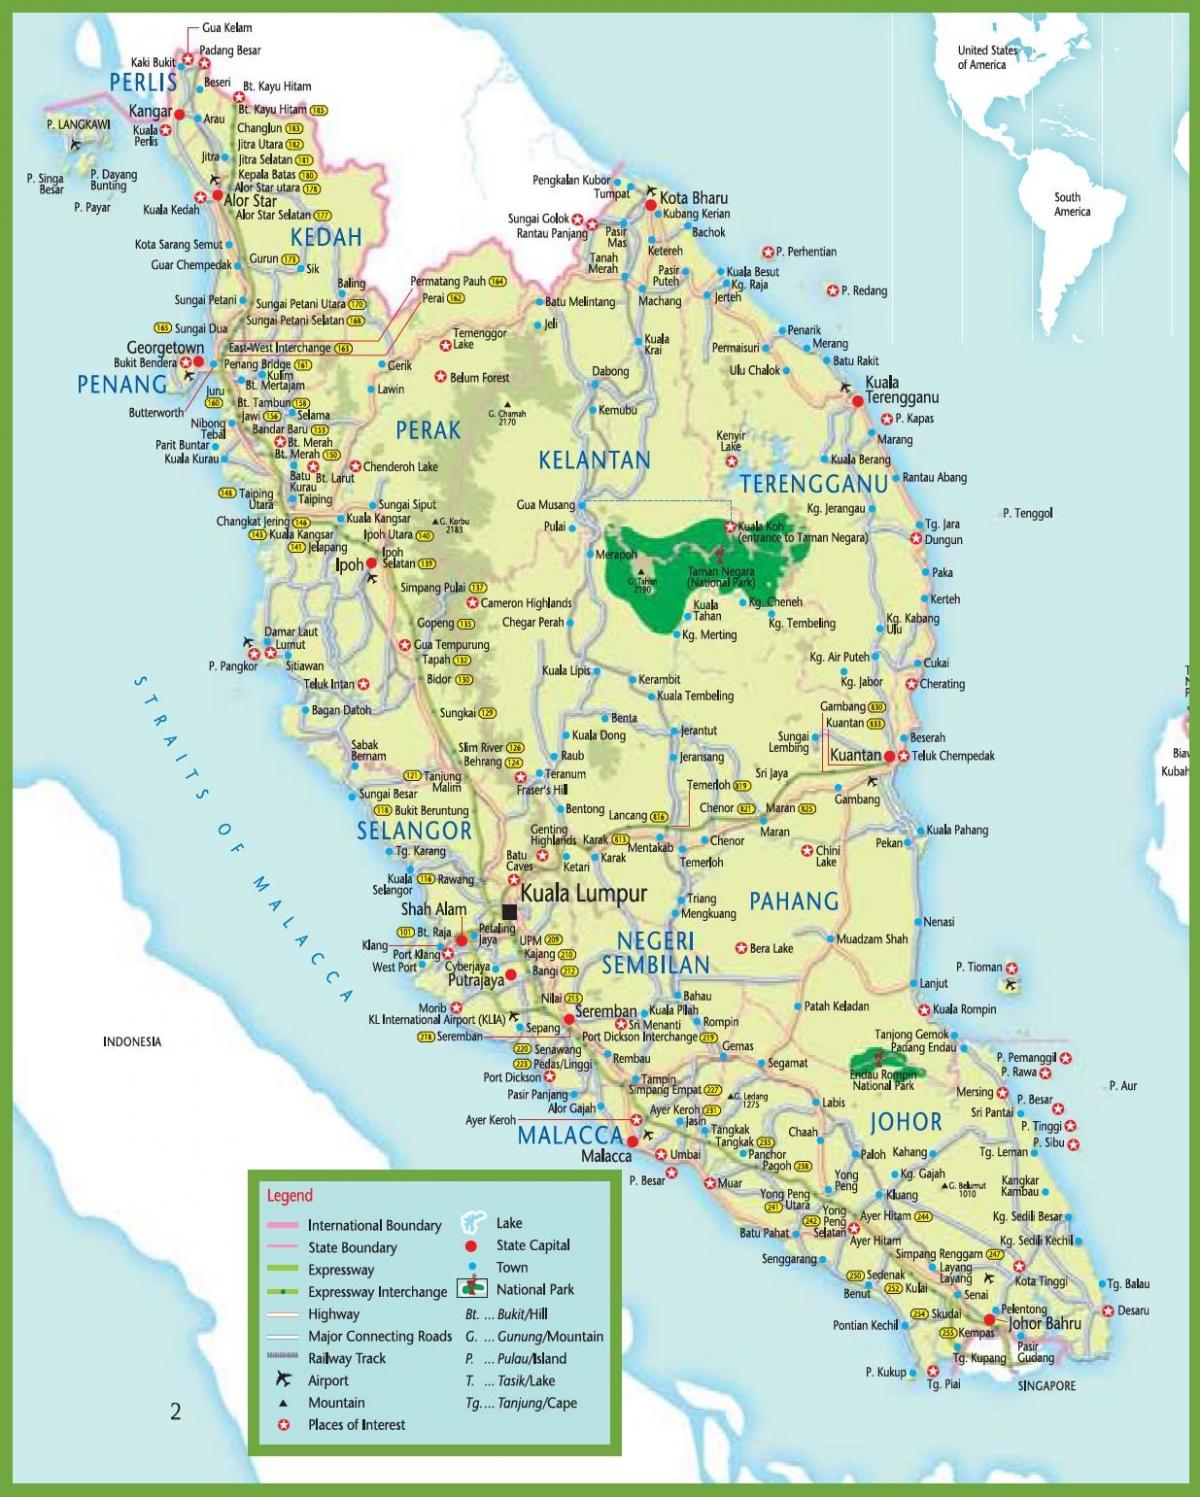 mrt hartë në malajzi